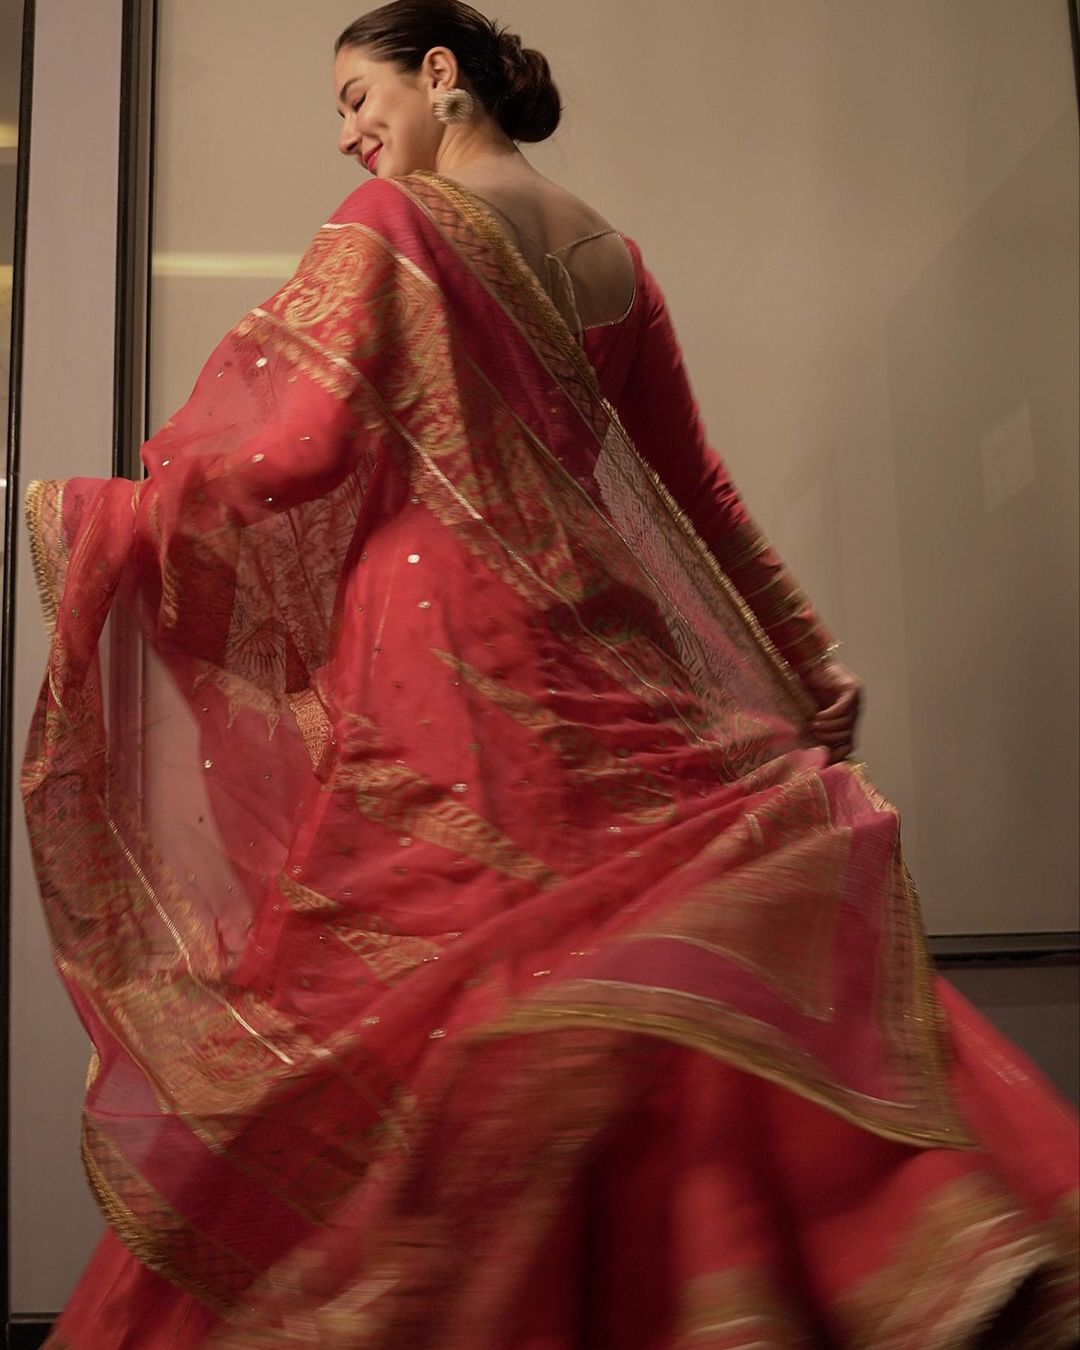 Hania Aamir displays Royal Grace in Peach Color Pishwas